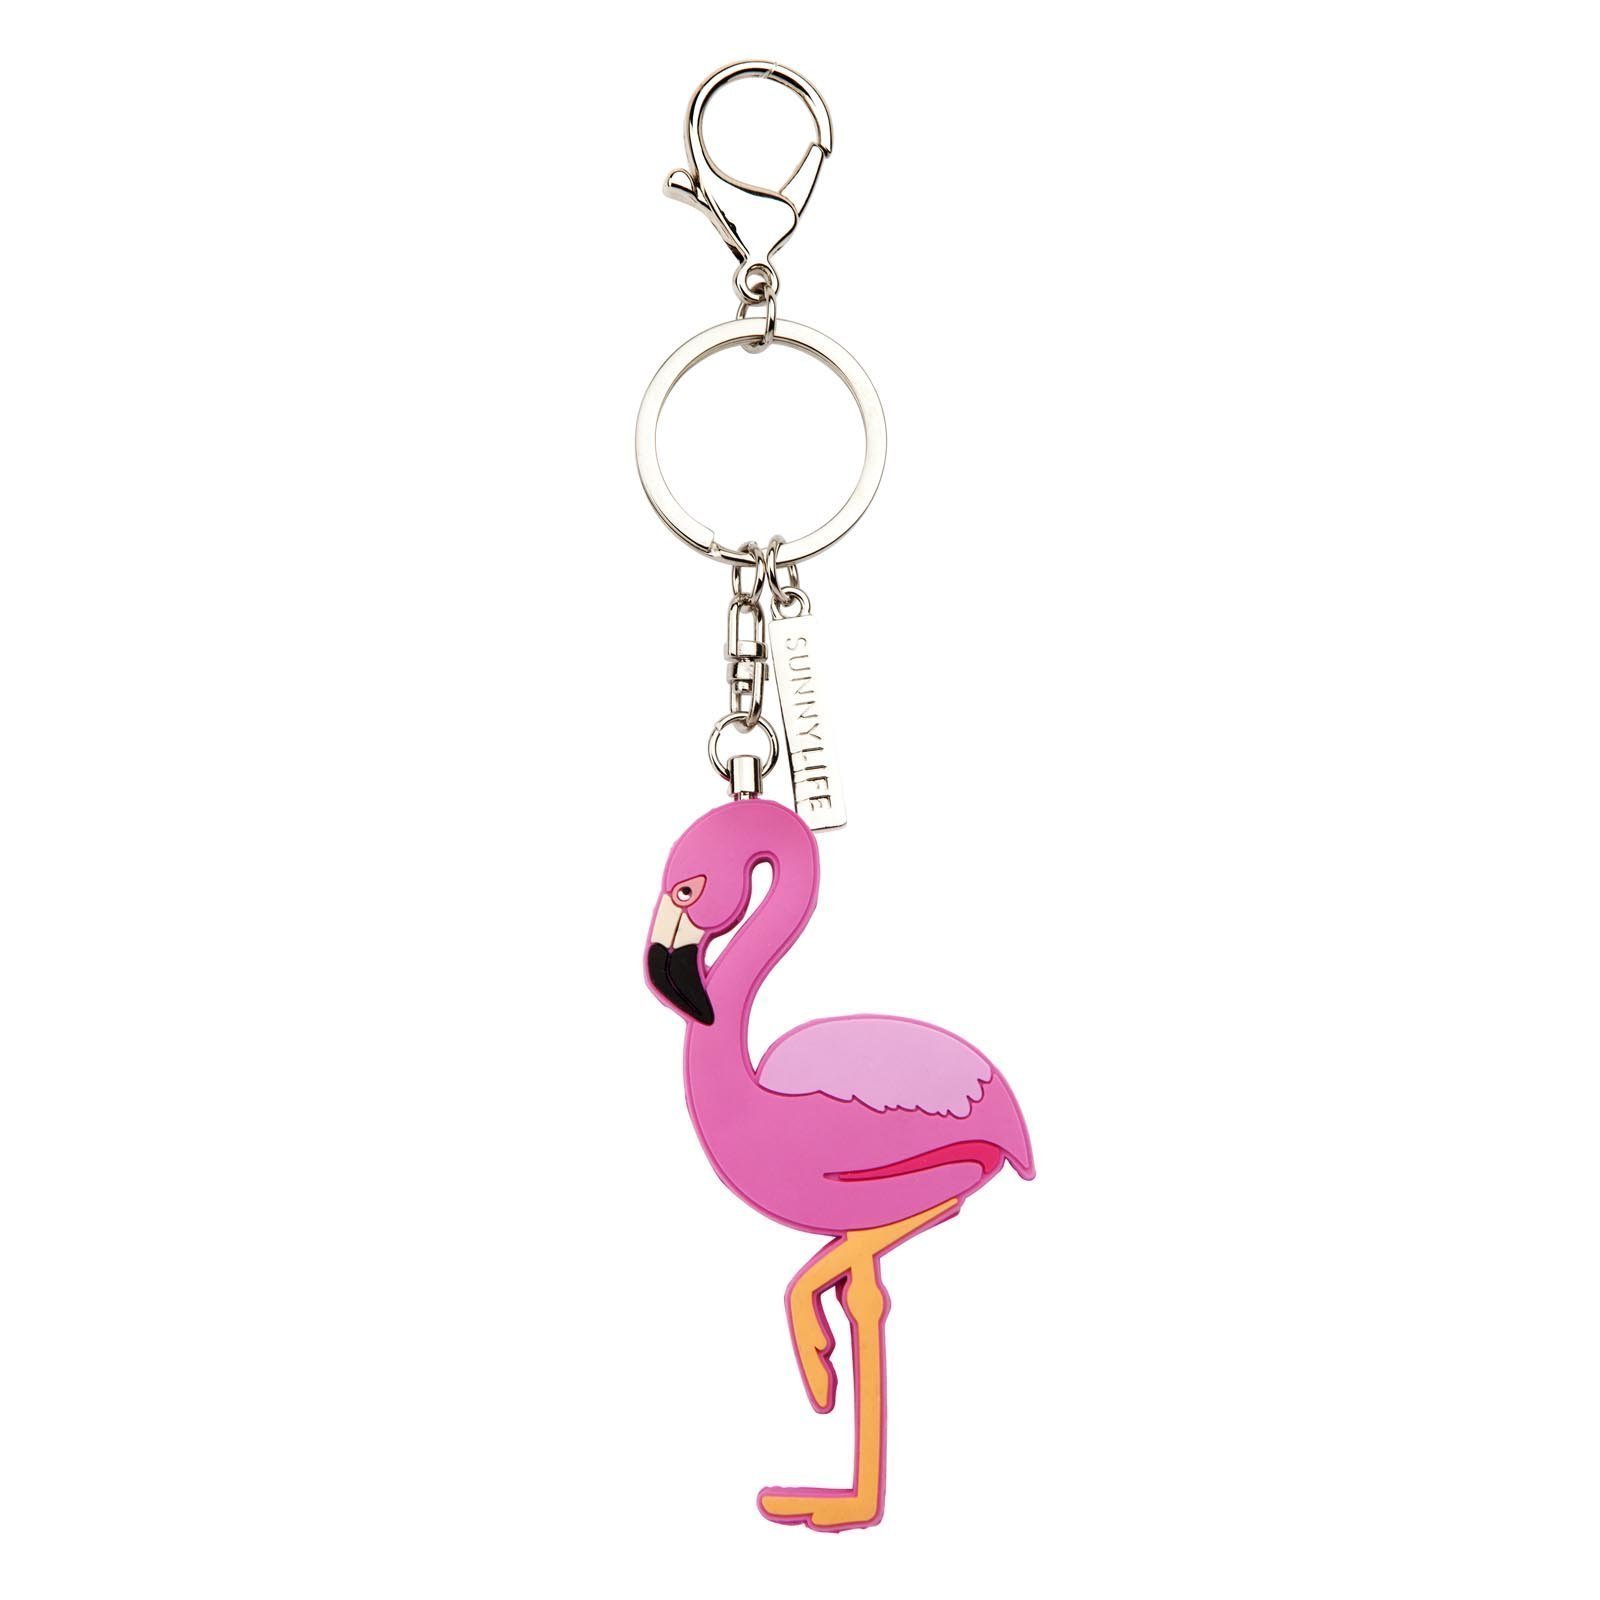 Key Ring Key Ring - Flamingo - Flamingo Key Ring - Brand Sunnylife